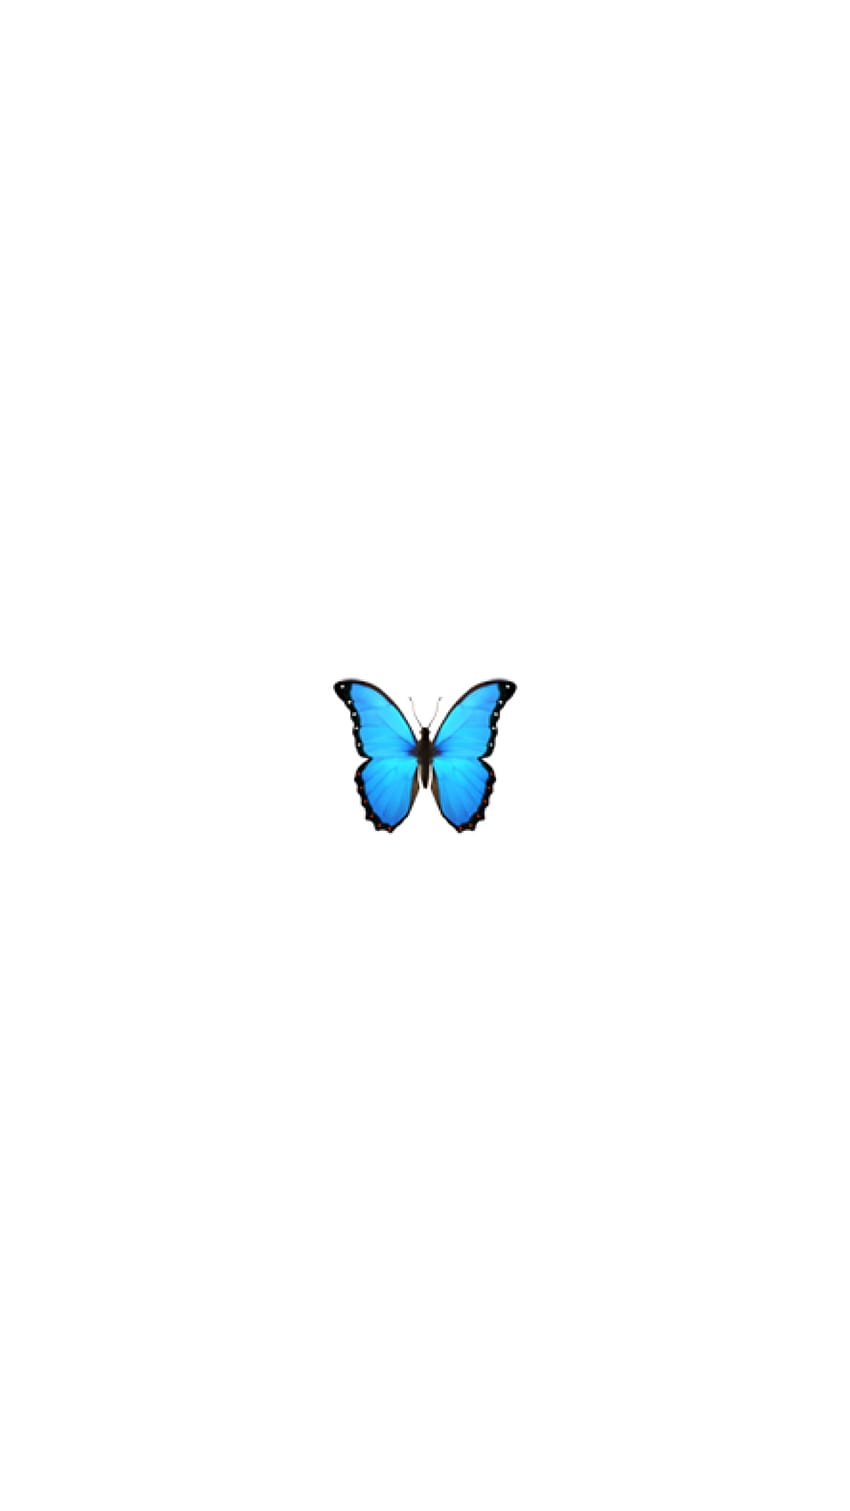 Butterfly effect, butterfly emoji HD phone wallpaper